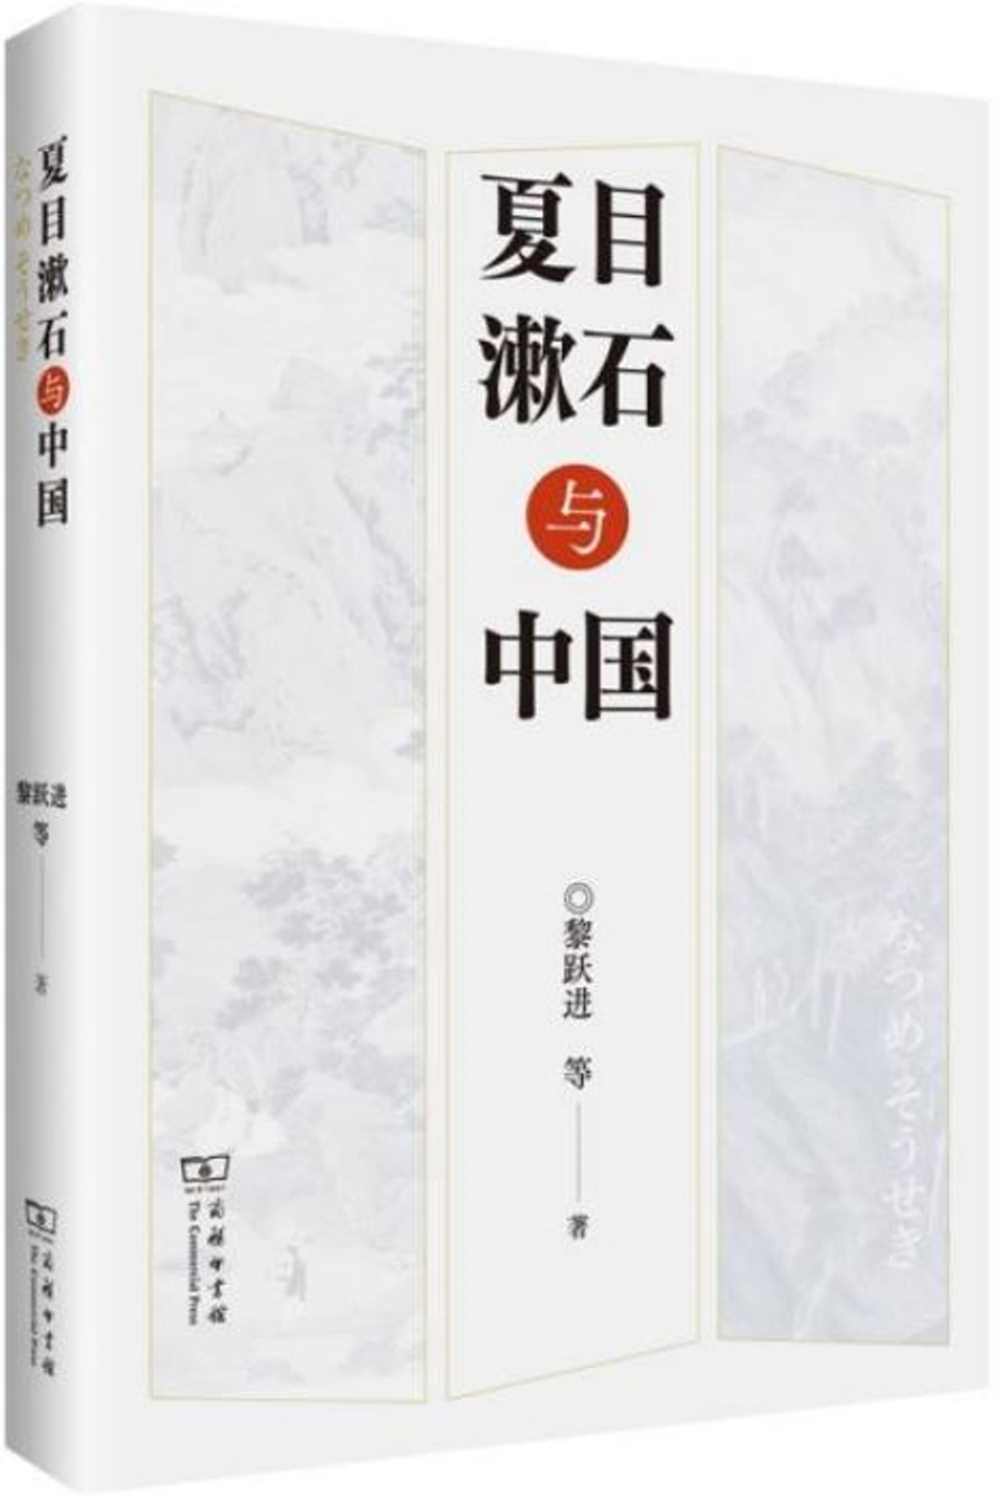 夏目漱石與中國